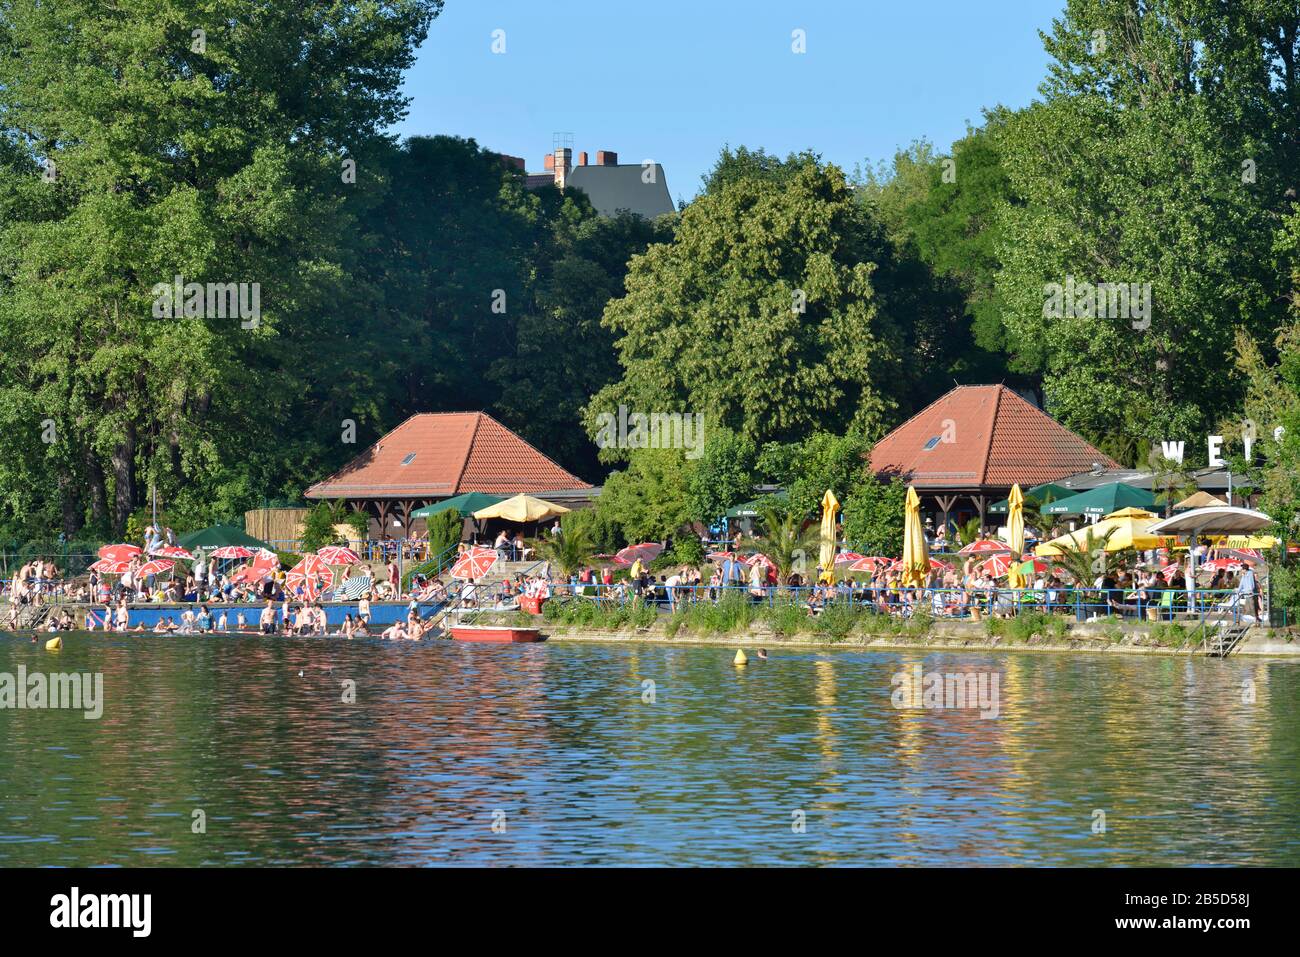 Strandbad, Weisser See, Weissensee, Pankow, Berlin, Deutschland Foto Stock